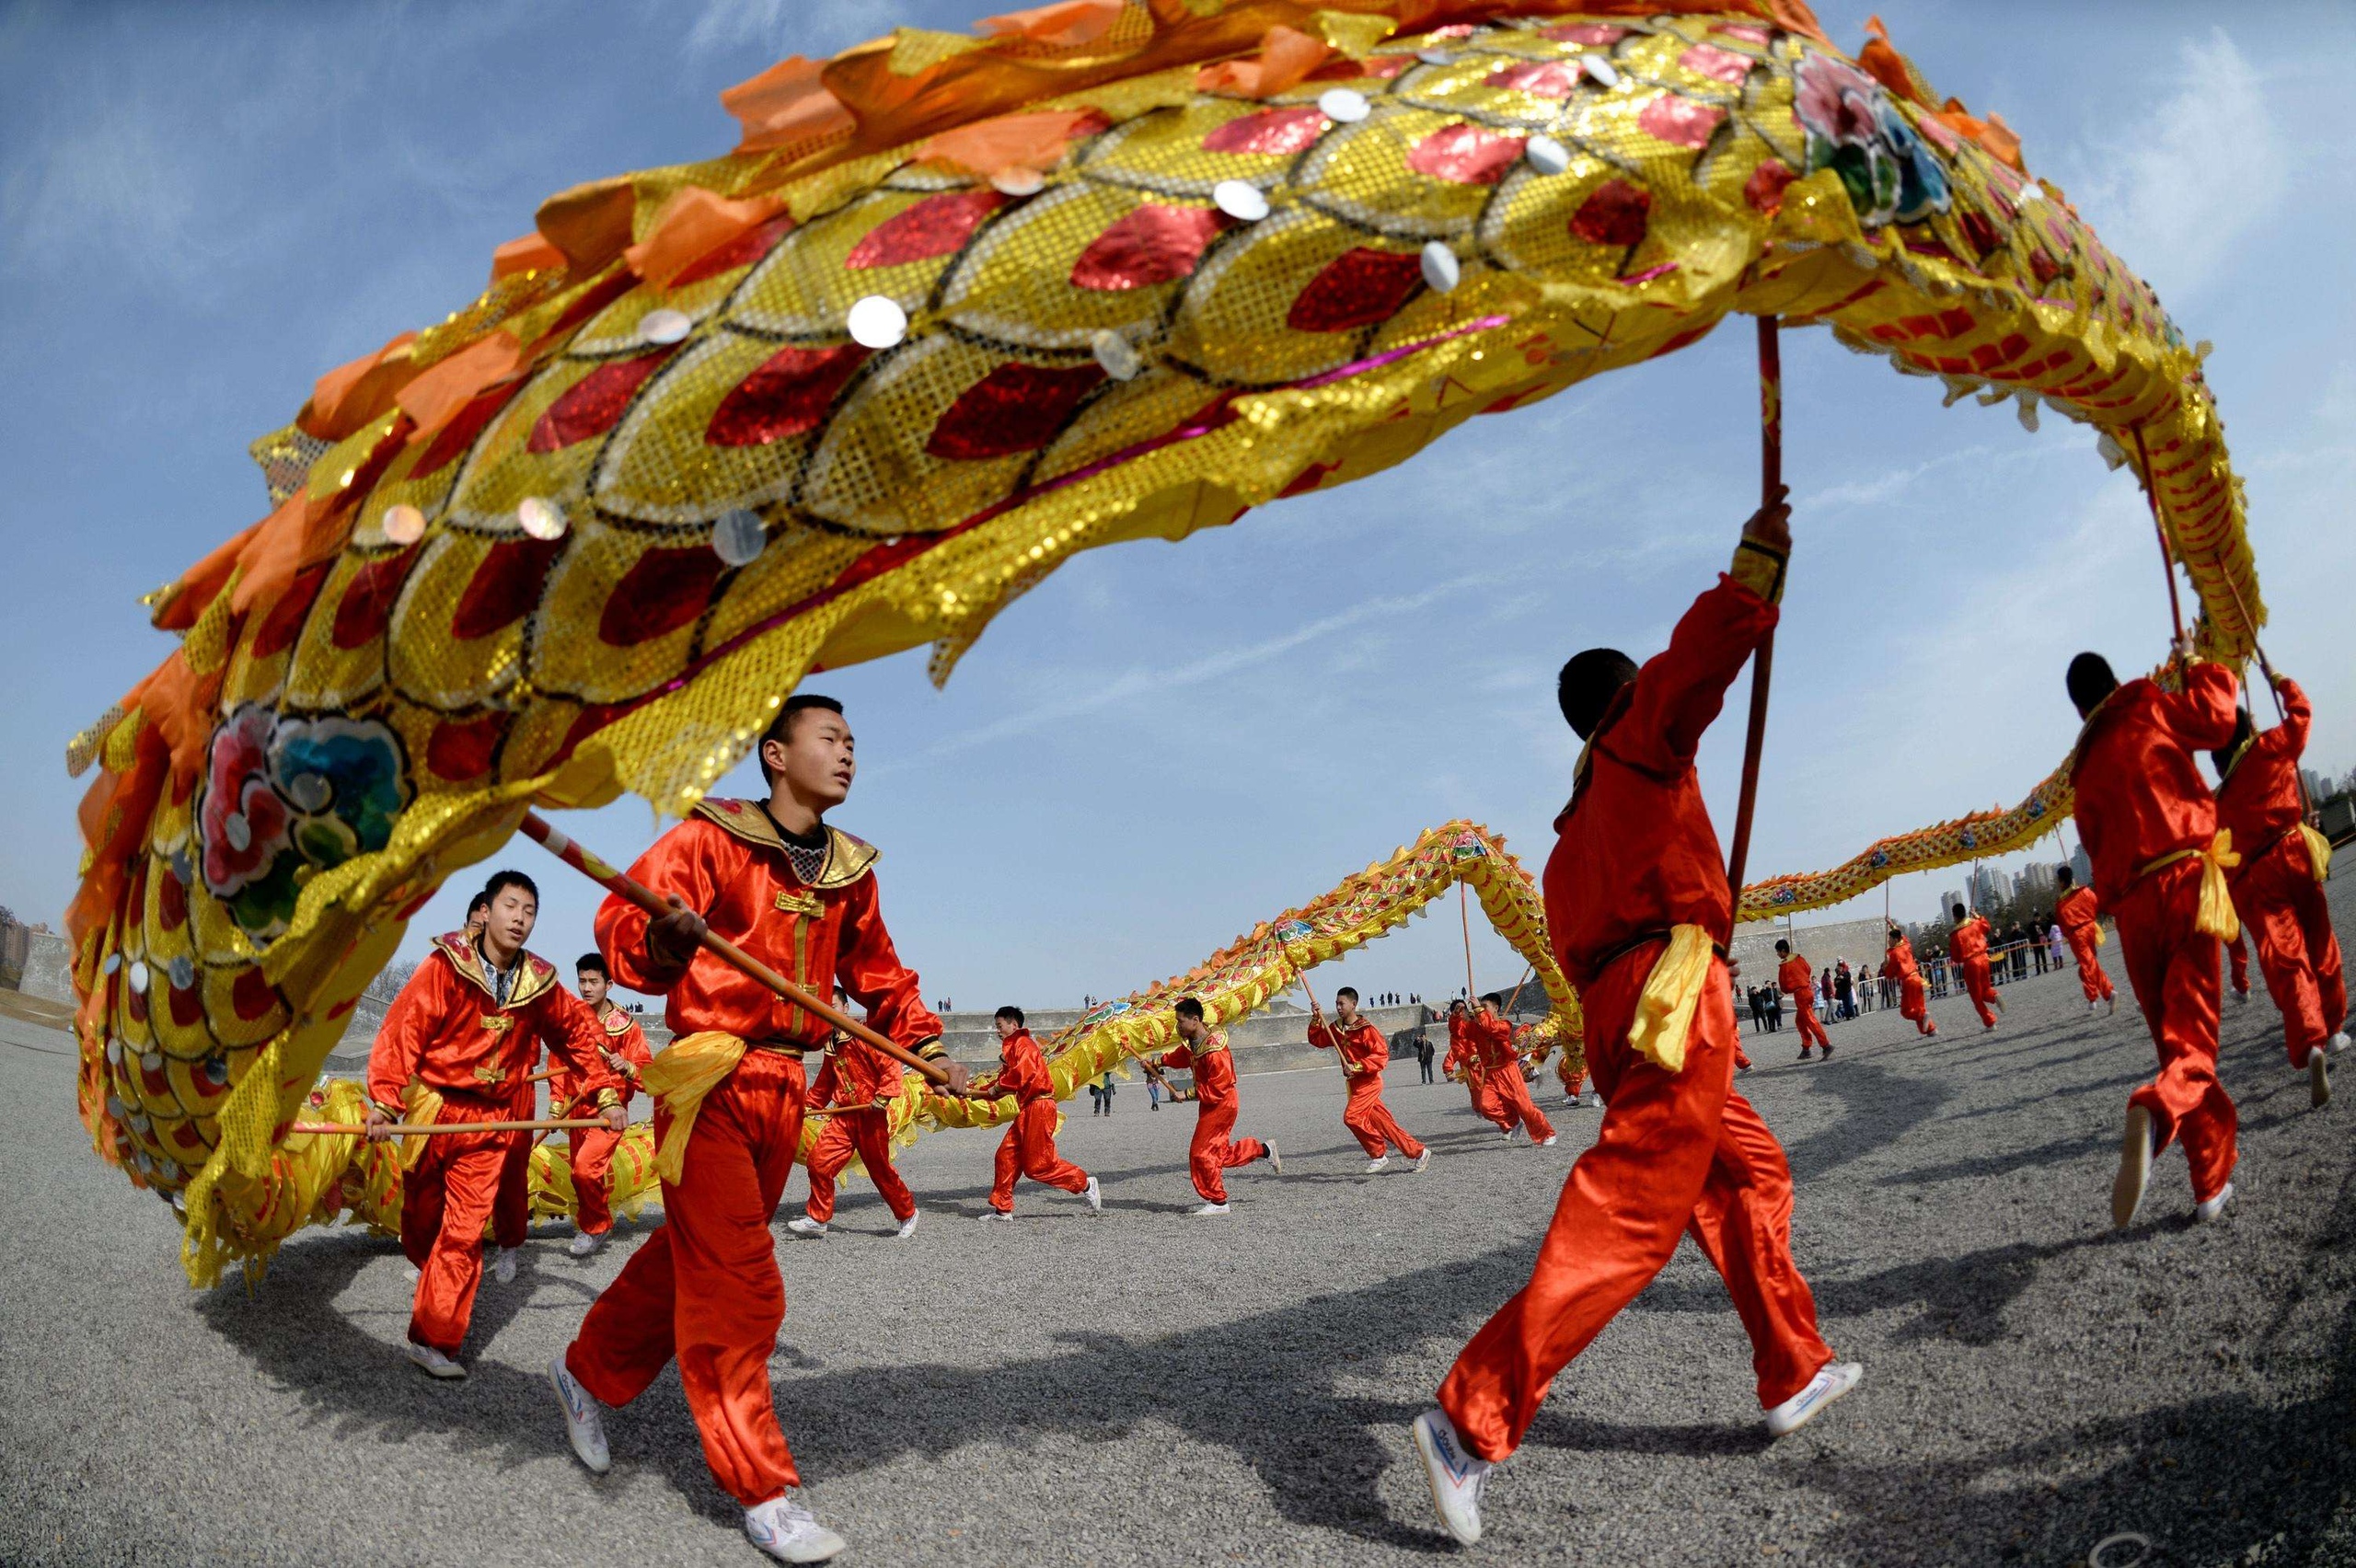 Китайский новый год 2022 ⛩ традиции и обычаи празднования